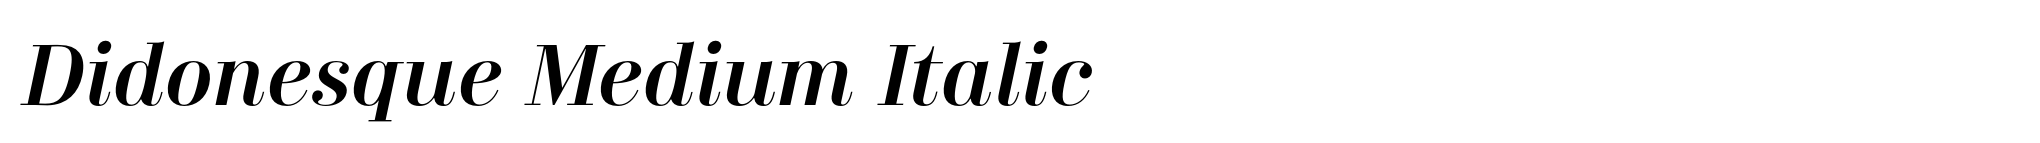 Didonesque Medium Italic image